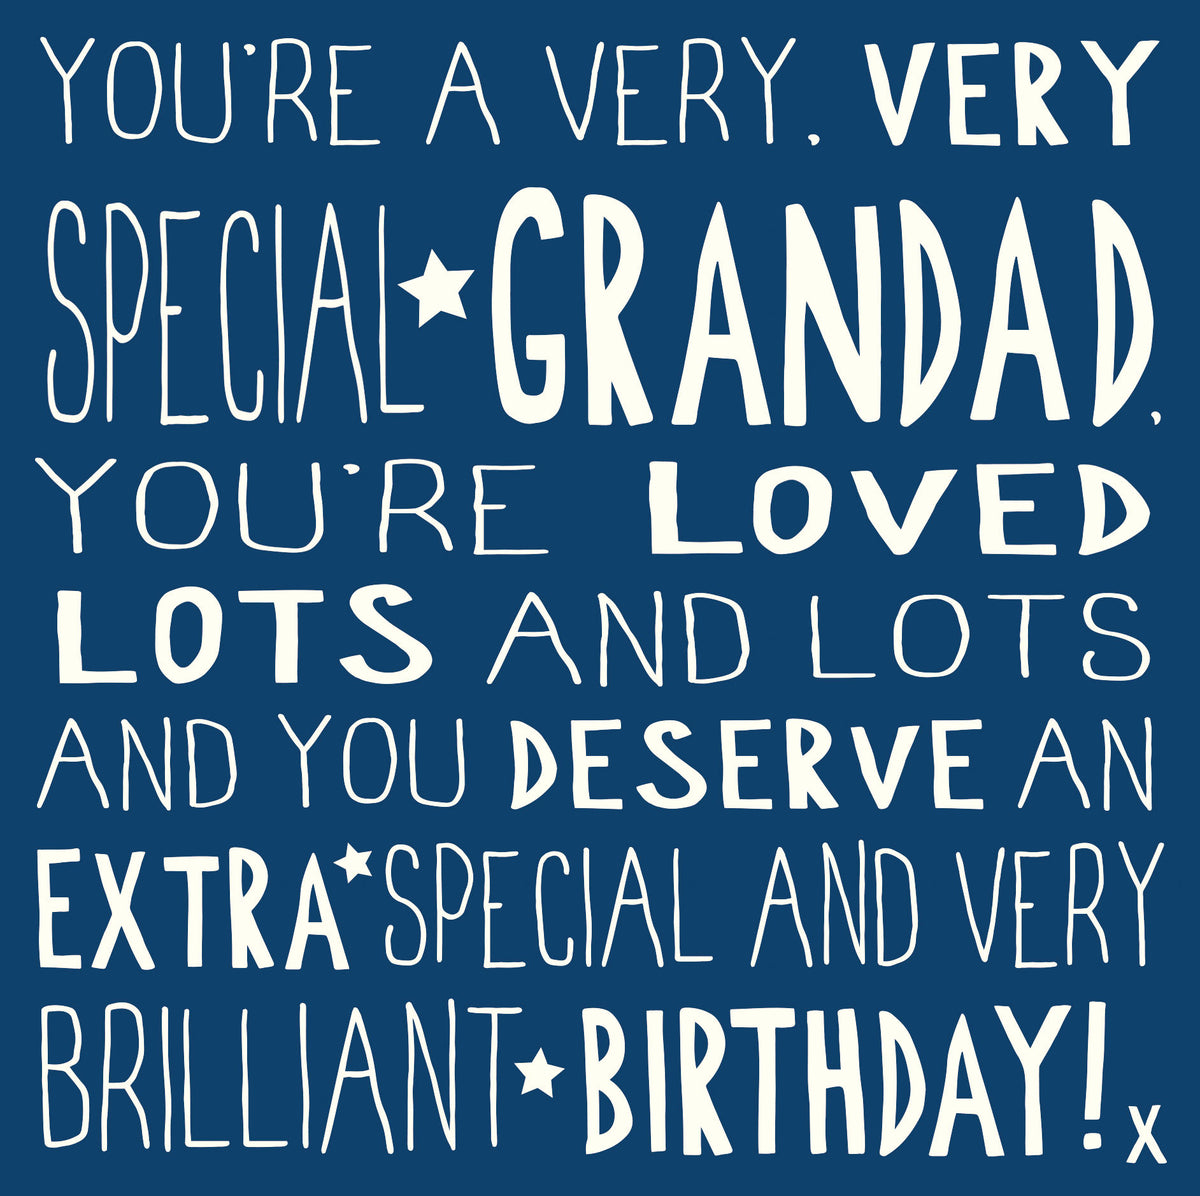 Very Very Special Grandad Birthday Card from Penny Black